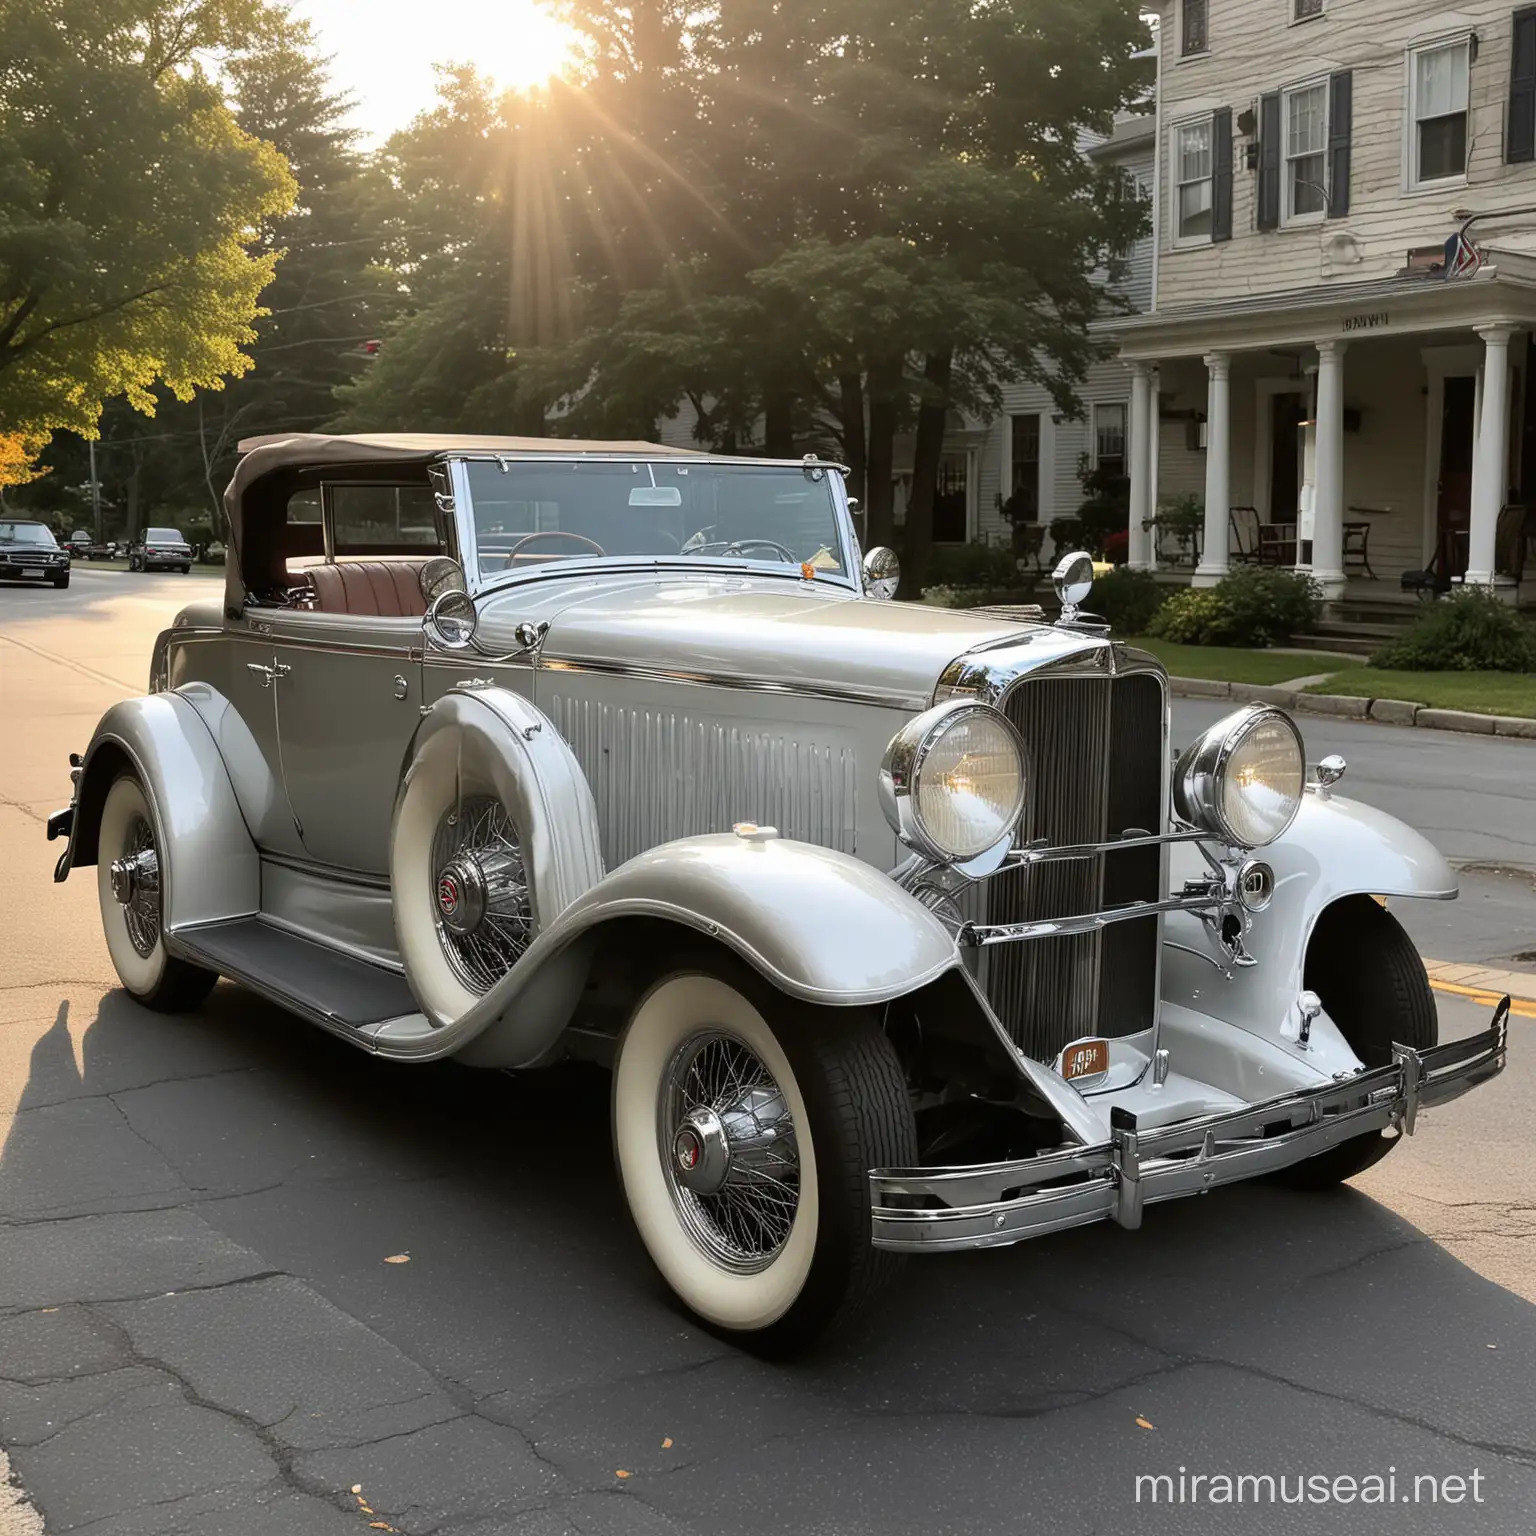 Lincoln KB Convertible 1932, Clásico, color plateado claro, estacionado en una calle de Montpelier Vermont, a las 6 de la tarde, cielo despejado, el sol con su luz incide sobre este coche espectacularmente.